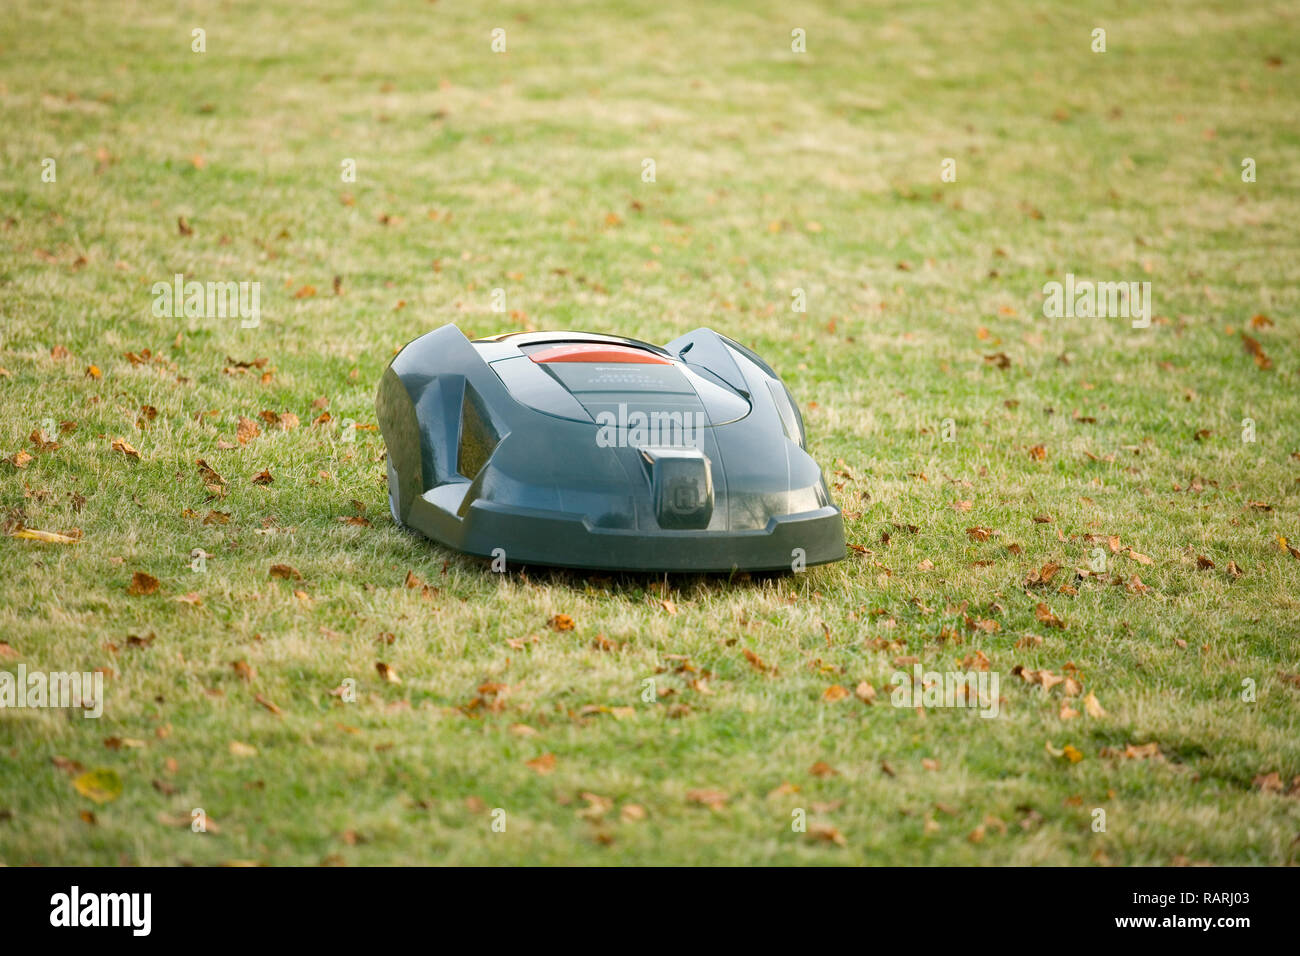 Tondeuse robot automatique coupé de l'herbe et se dirigeant vers l'appareil photo Banque D'Images